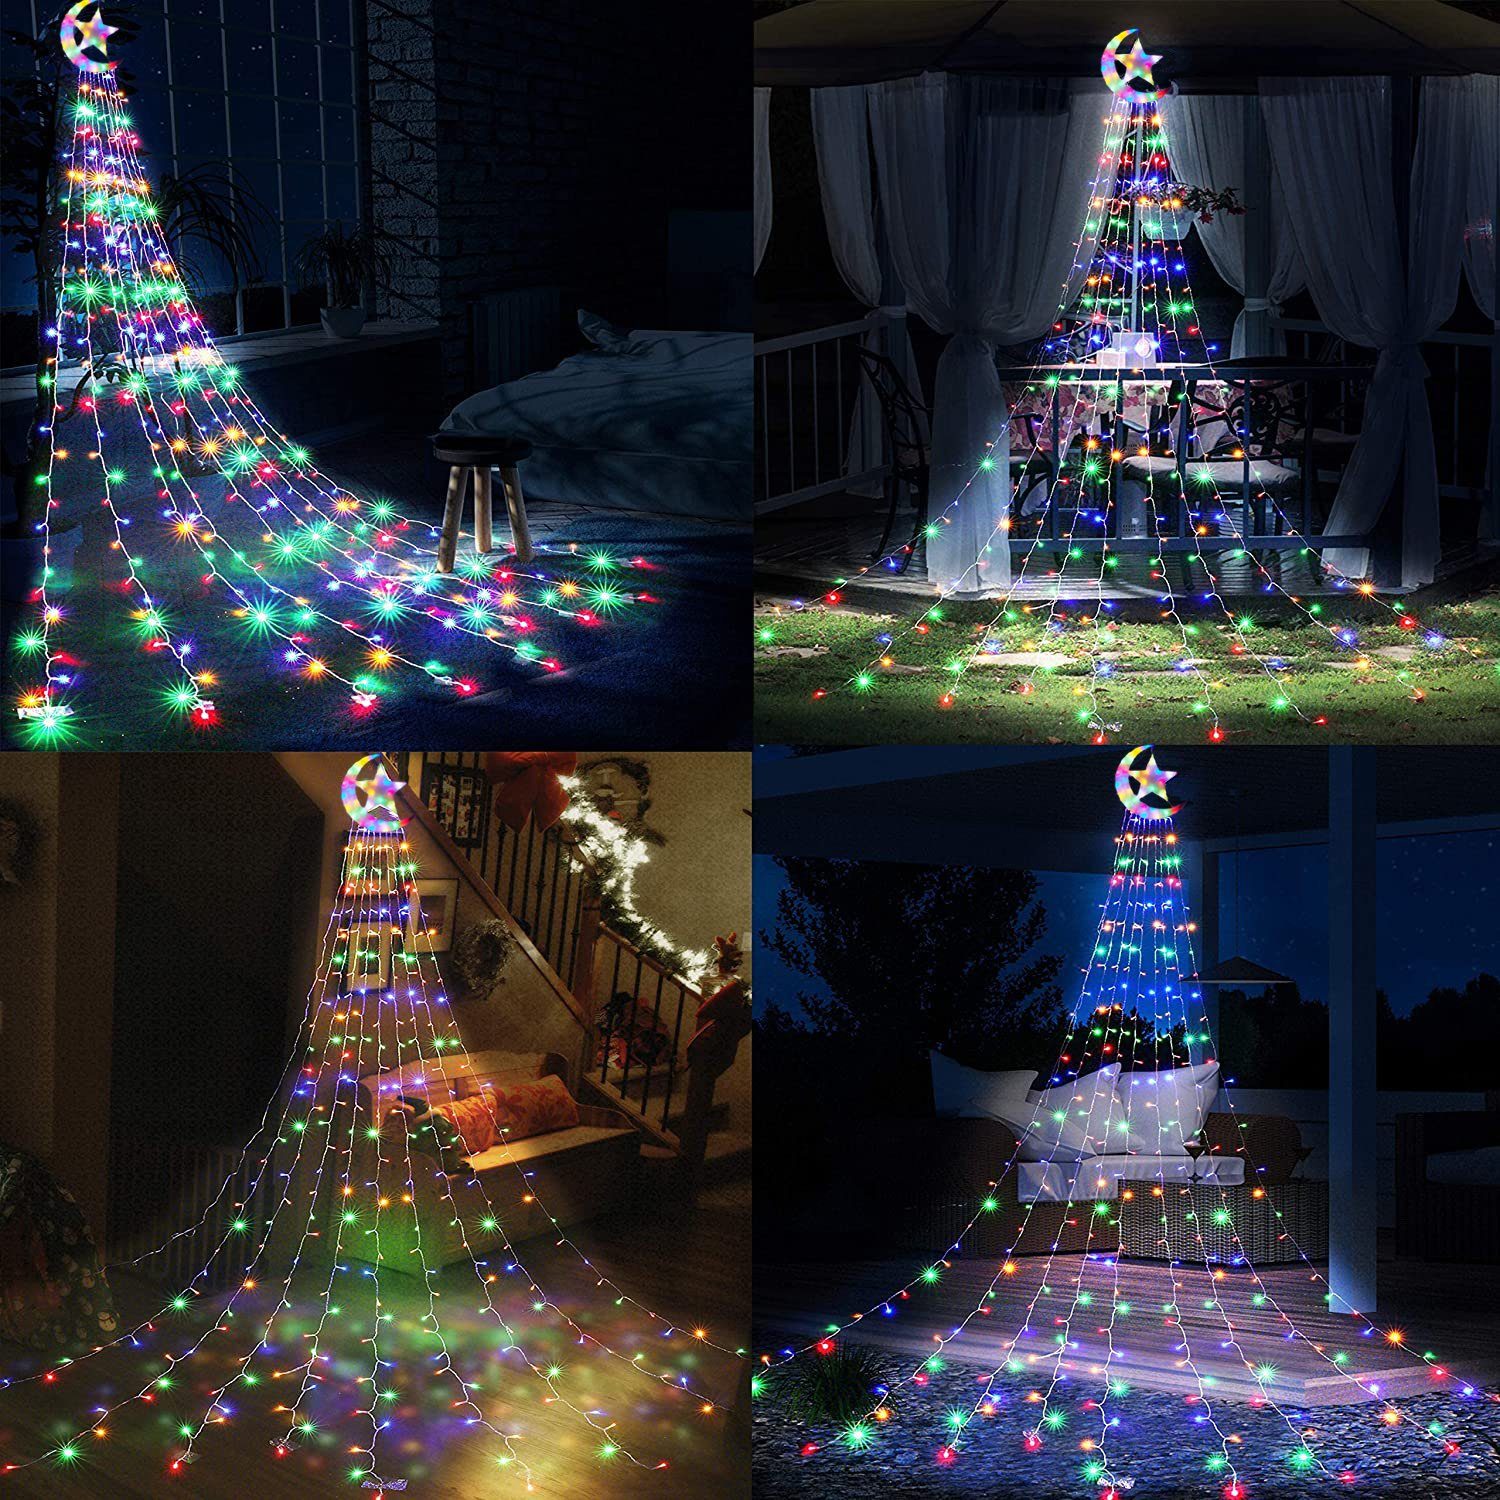 Sunicol LED-Baummantel 3.4M 350 LED wasserdicht Party Energiesparen, Mond Stern 8 Wasserfall mit und Weihnachtsbaum 31V Multicolor- Garten, Modi, Beleuchtung,Außen